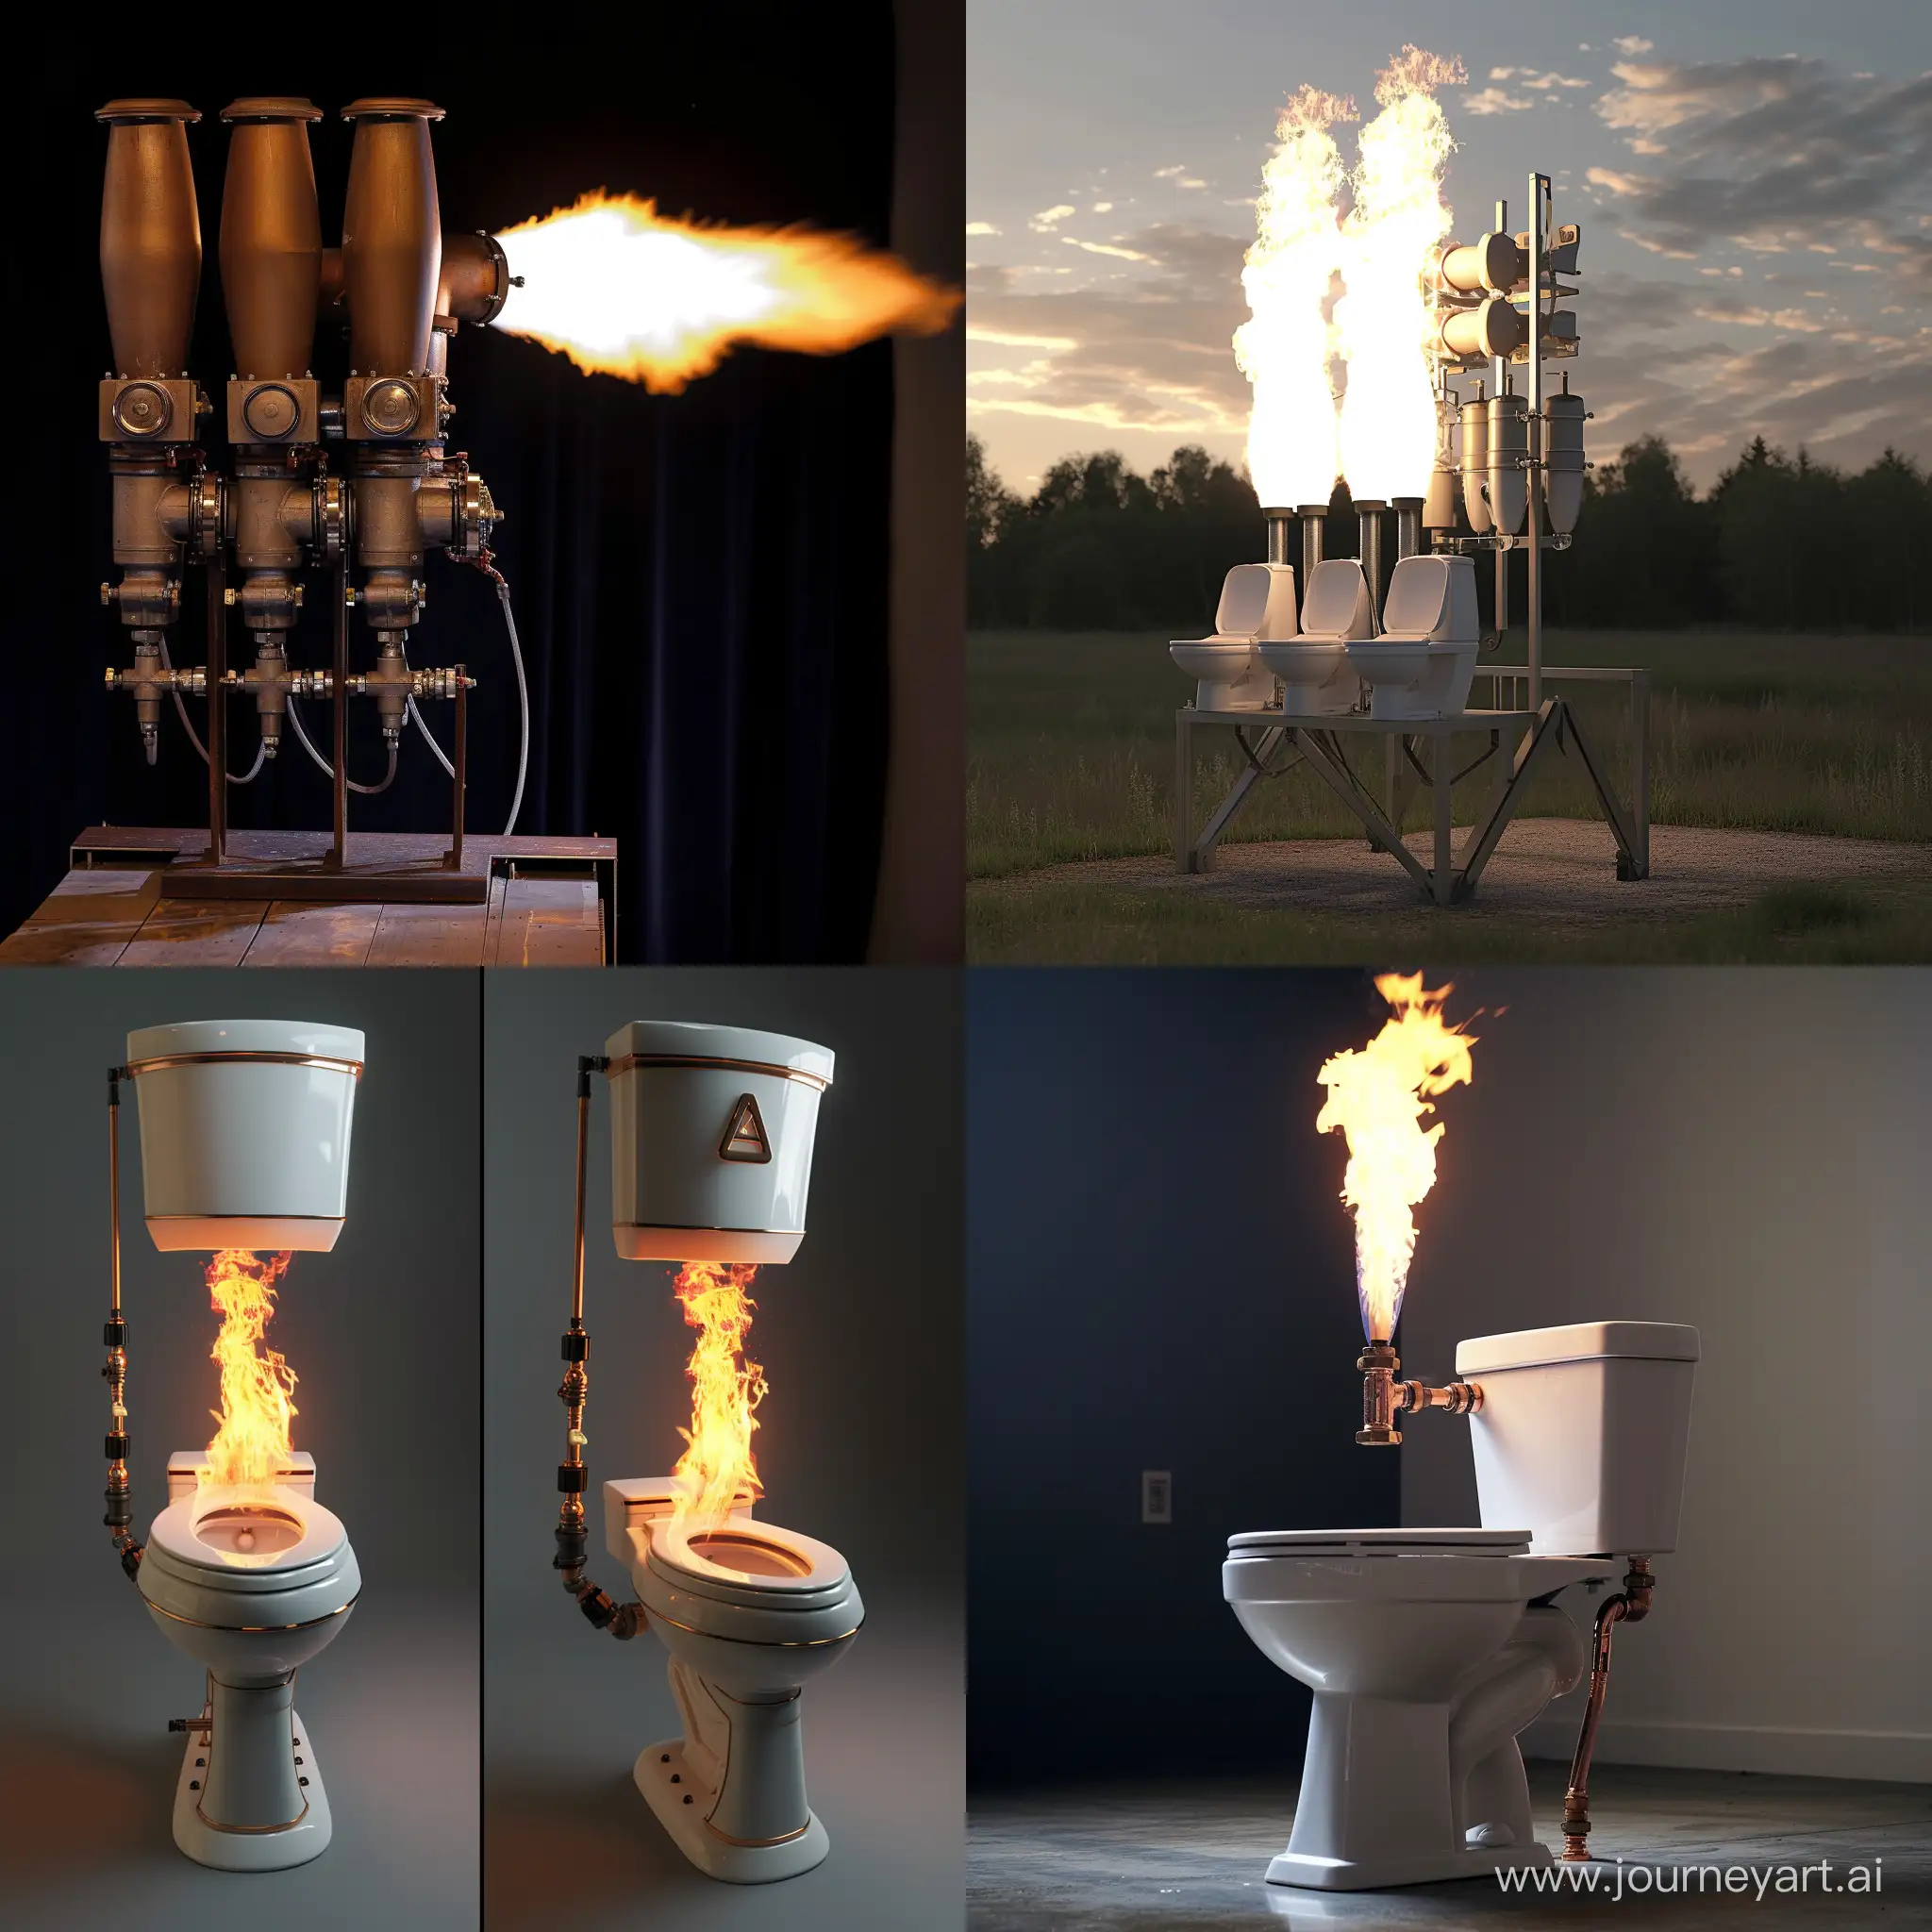 HighTech-Toilet-Flamethrower-in-Action